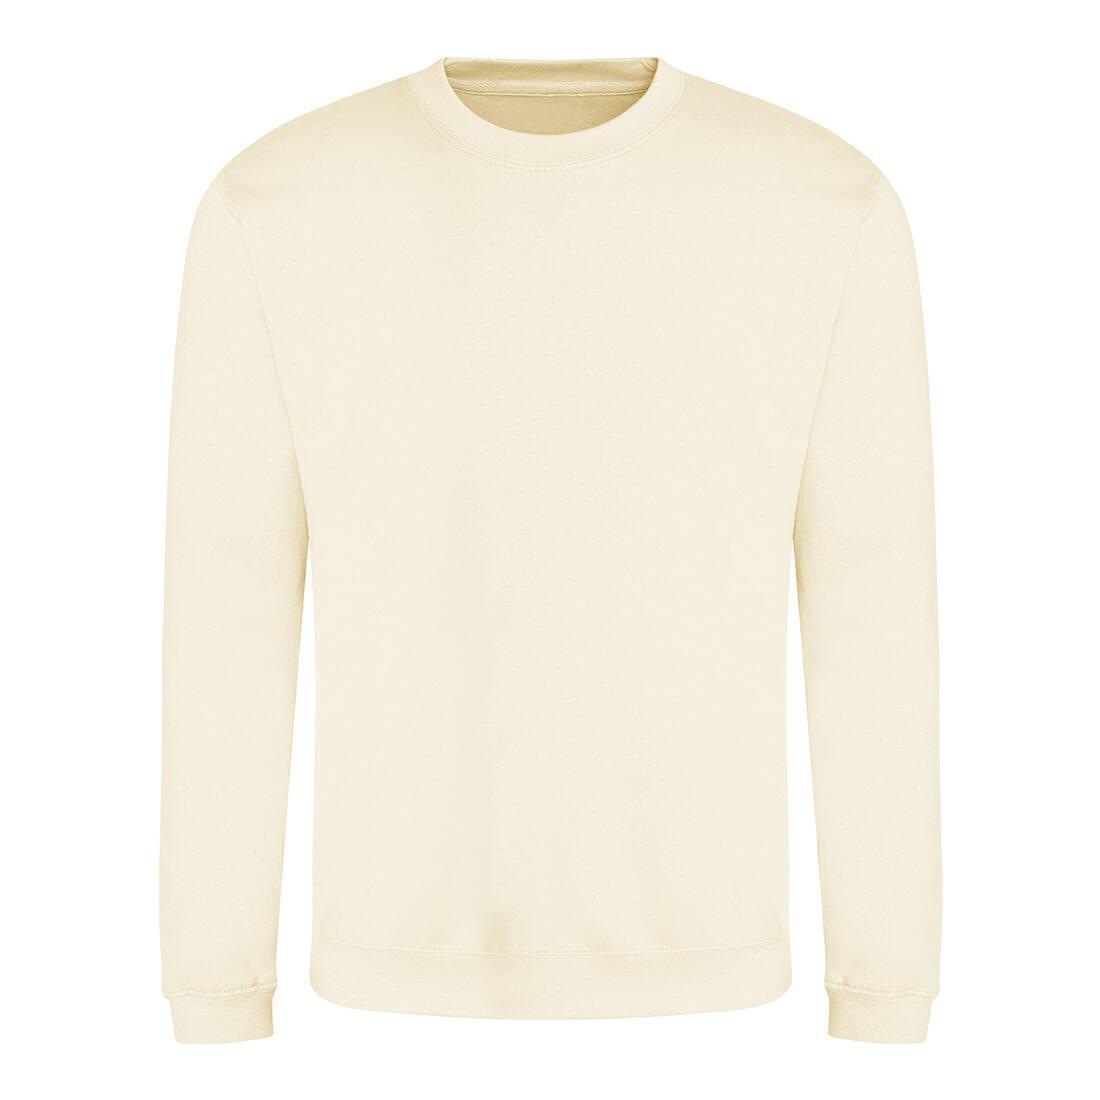 Sweater voor heren vanilla milkshake van kleur merk Just Hoods te personaliseren